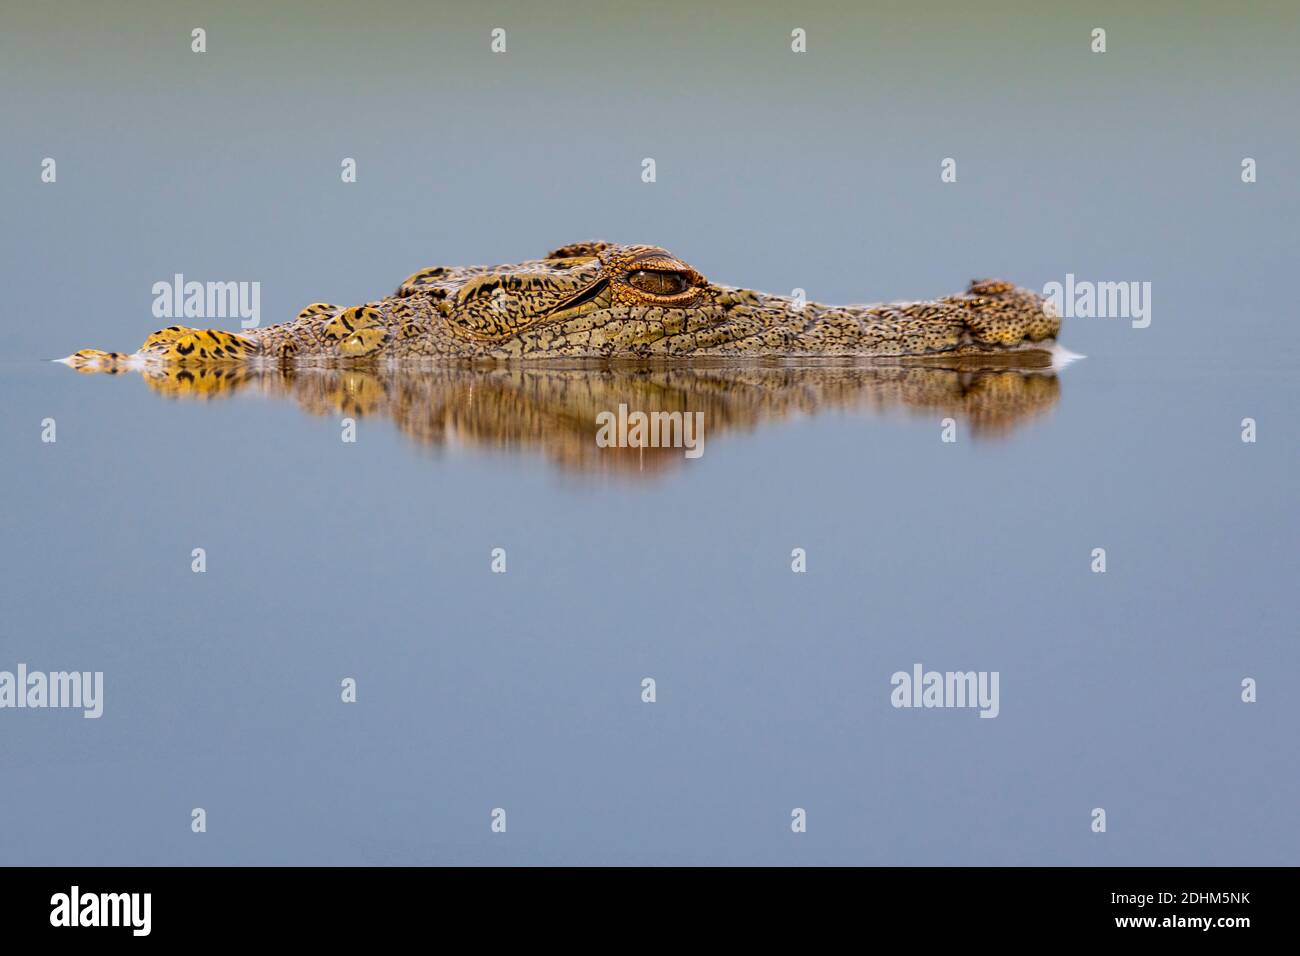 Junge nilkordile (Crocodylus niloticus) im Wasser im Zimanga Private Reserve, Südafrika. Stockfoto